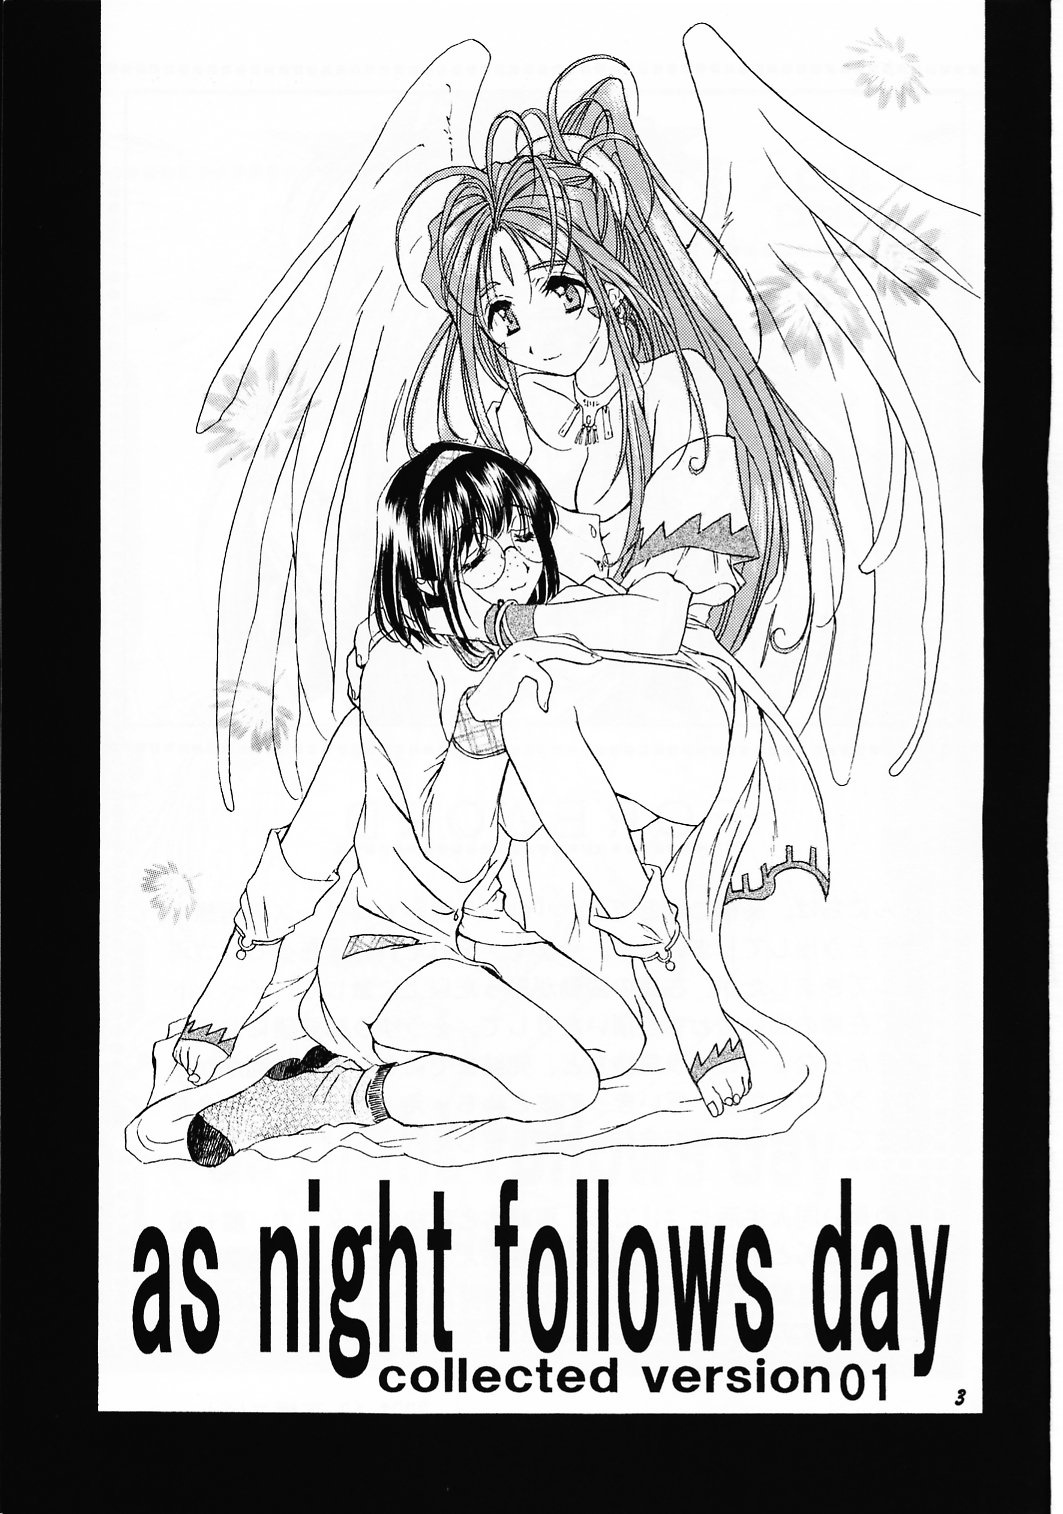 [メカニカルコード (高橋こばと)] as night follows day collected version 01 (ああっ女神さまっ)